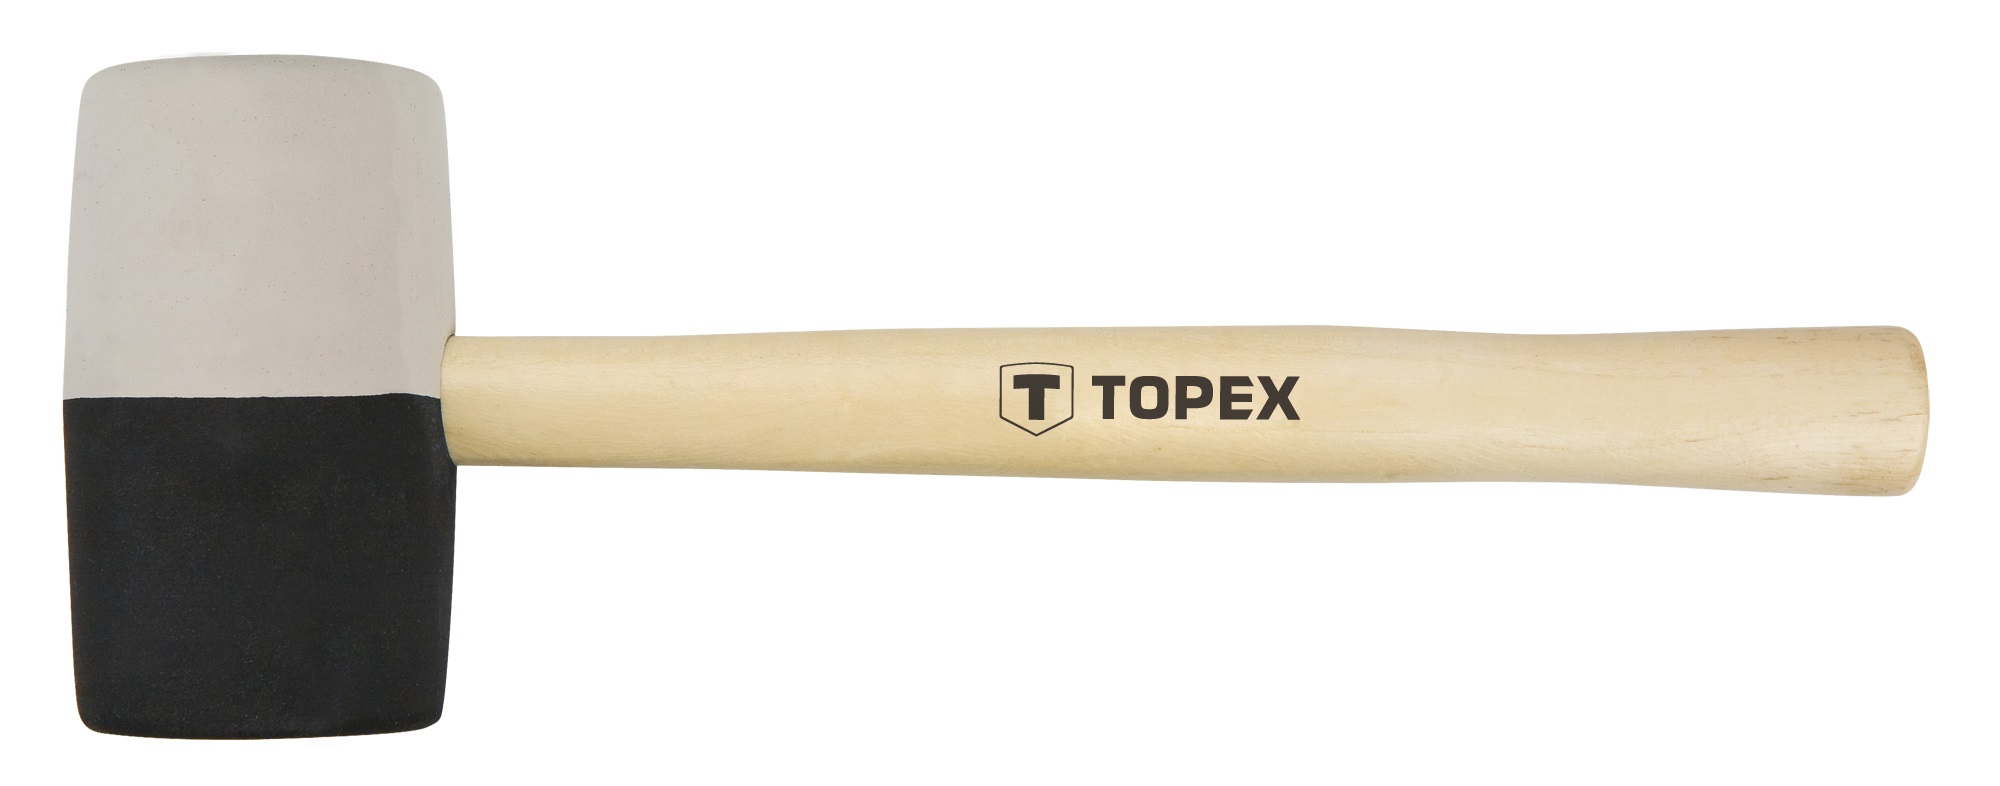  Topex 02A355